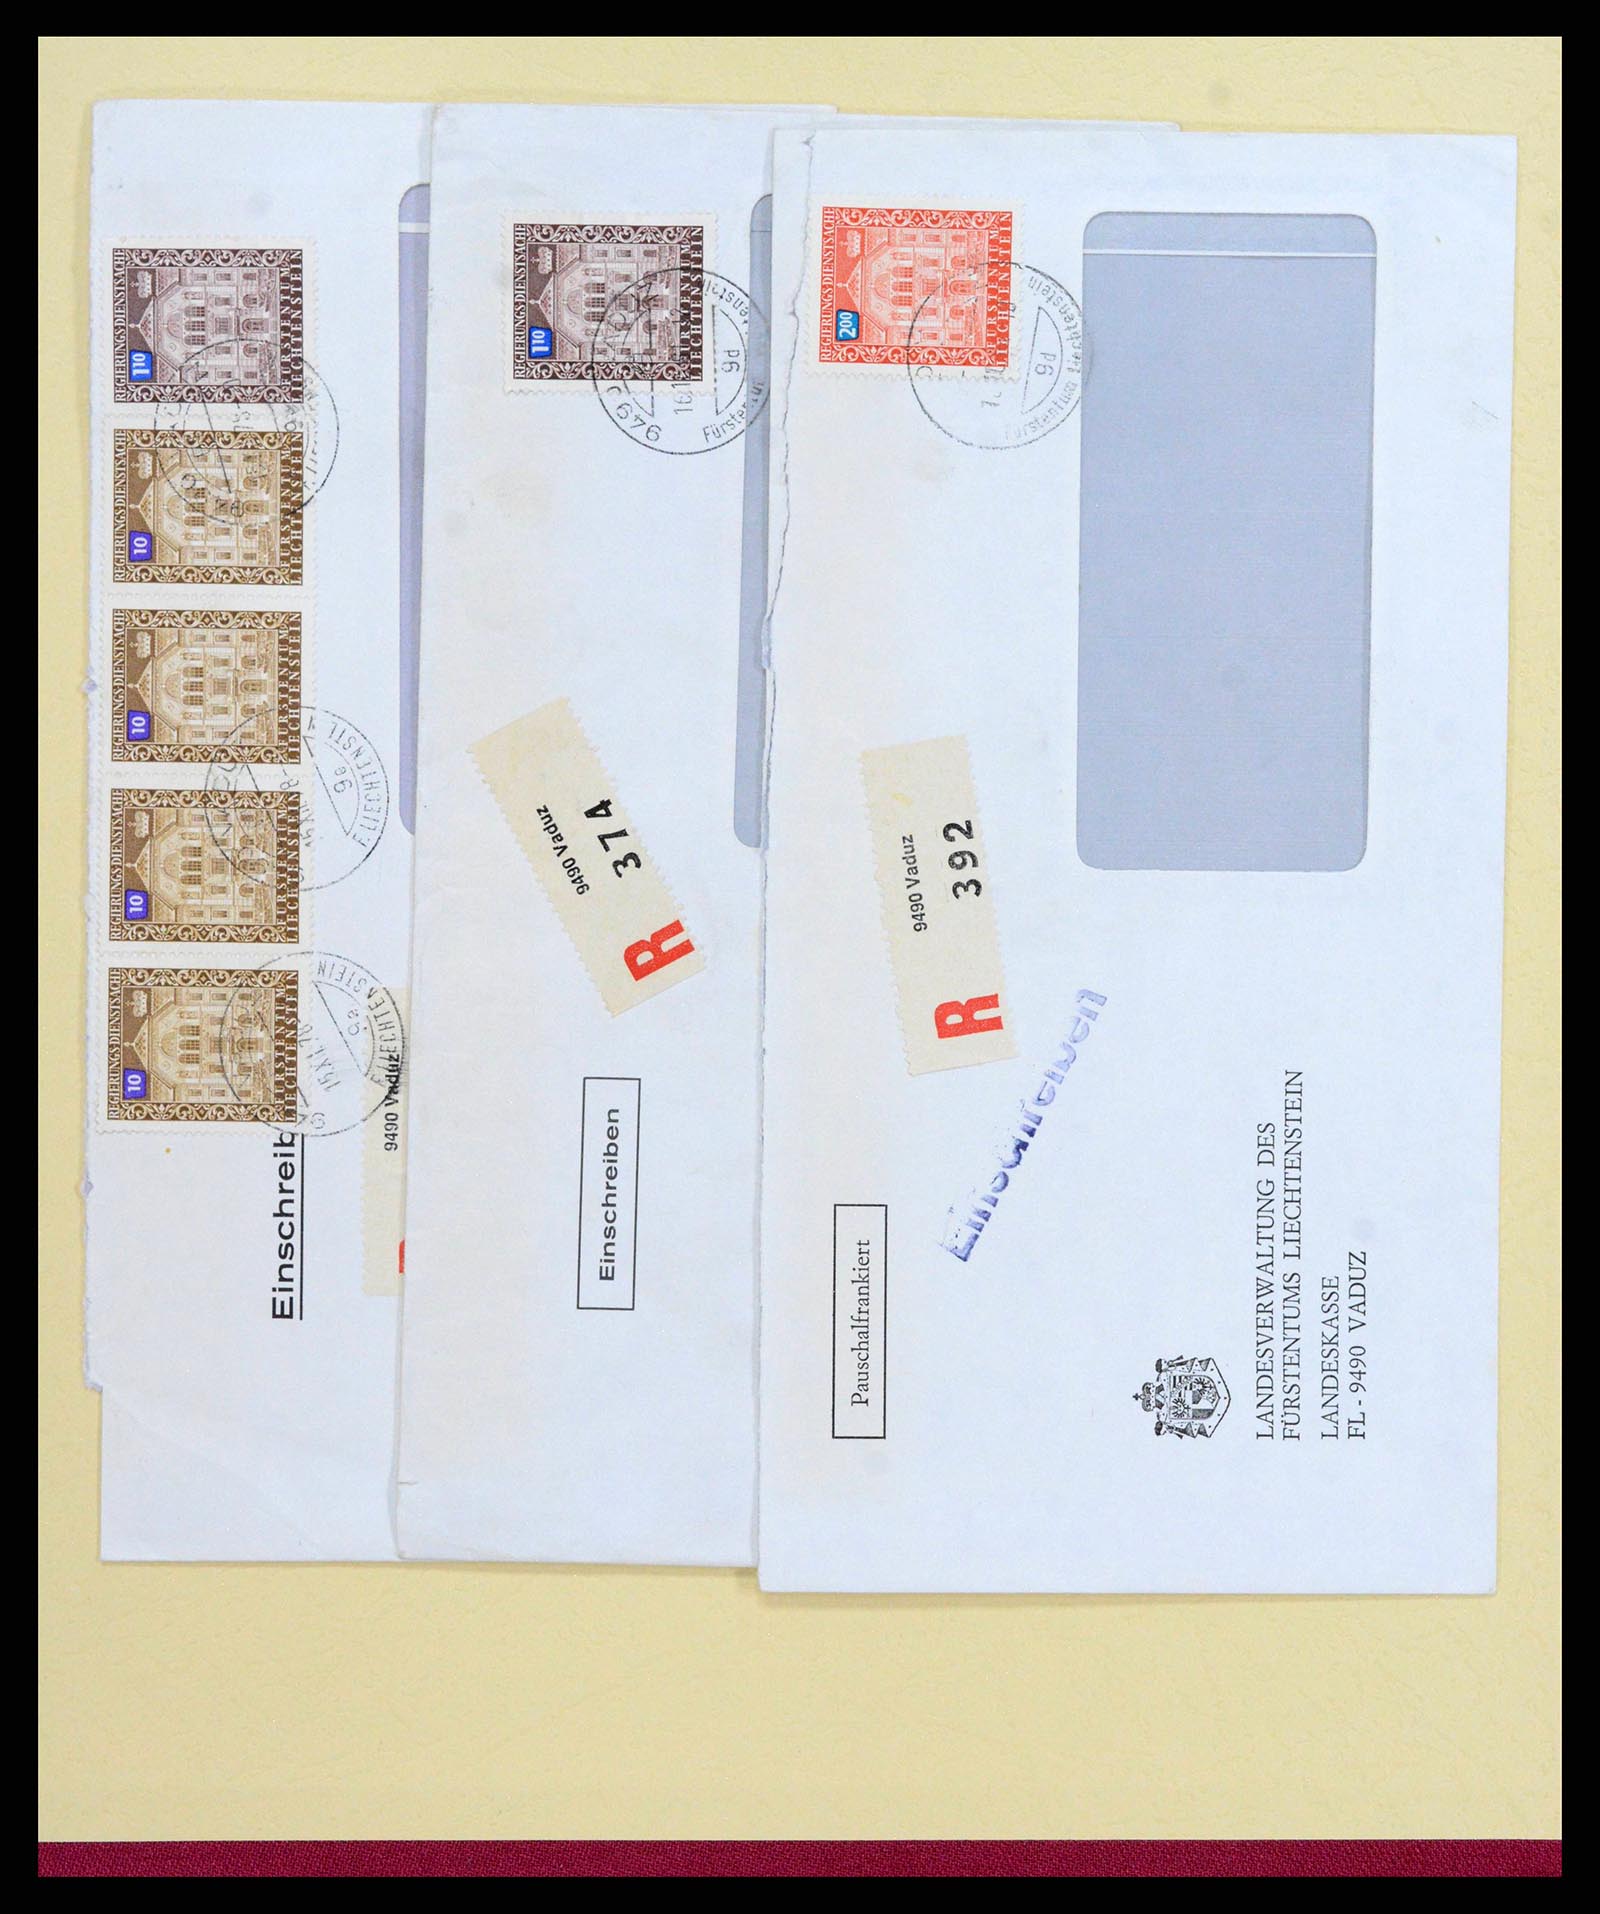 38204 0058 - Stamp collection 38204 Liechtenstein service covers 1932-1989.